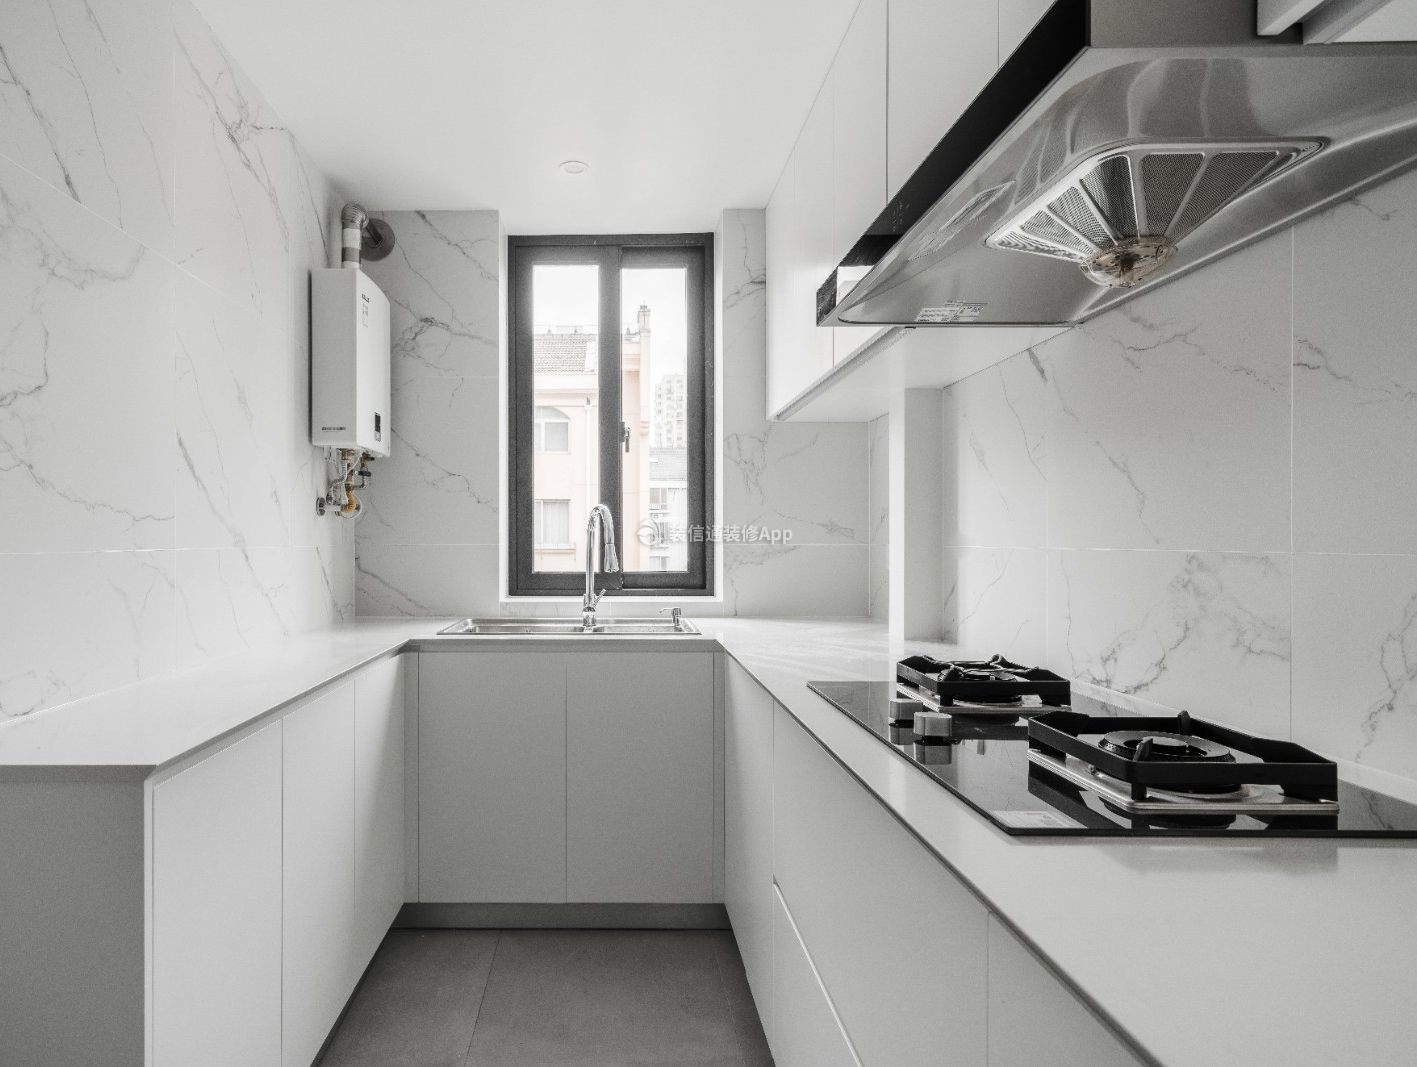 上海70平米房子厨房简约装修设计图